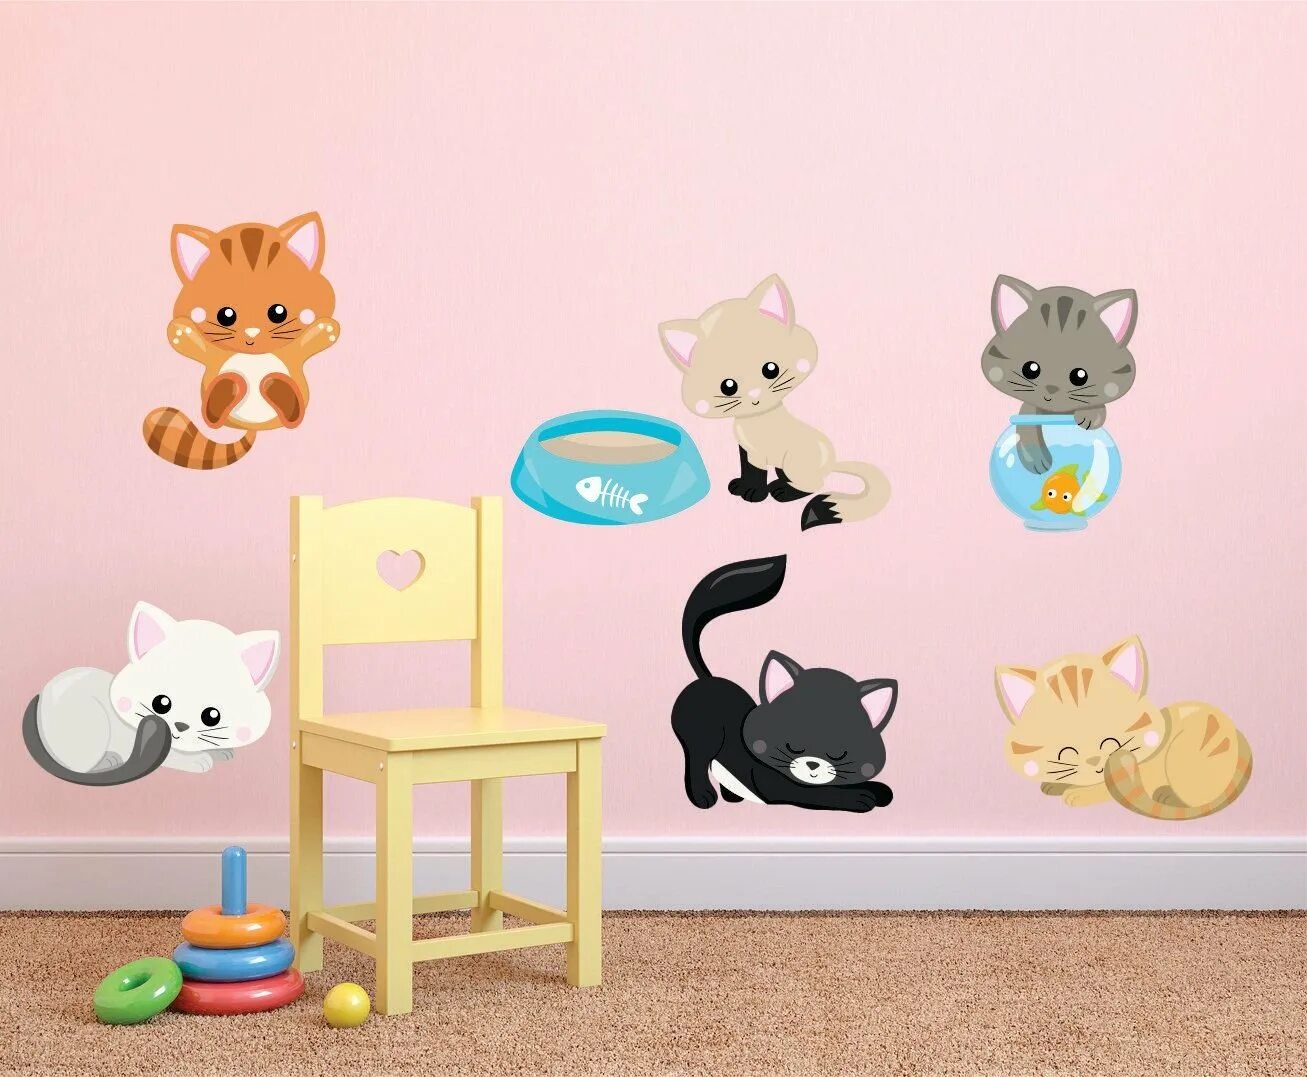 Купить кошку на стене. Кошка на стене игра. Игра стена котенок. Игрушка кирпичная стена с котиком. Картинки с котятами для стен в детском саду.